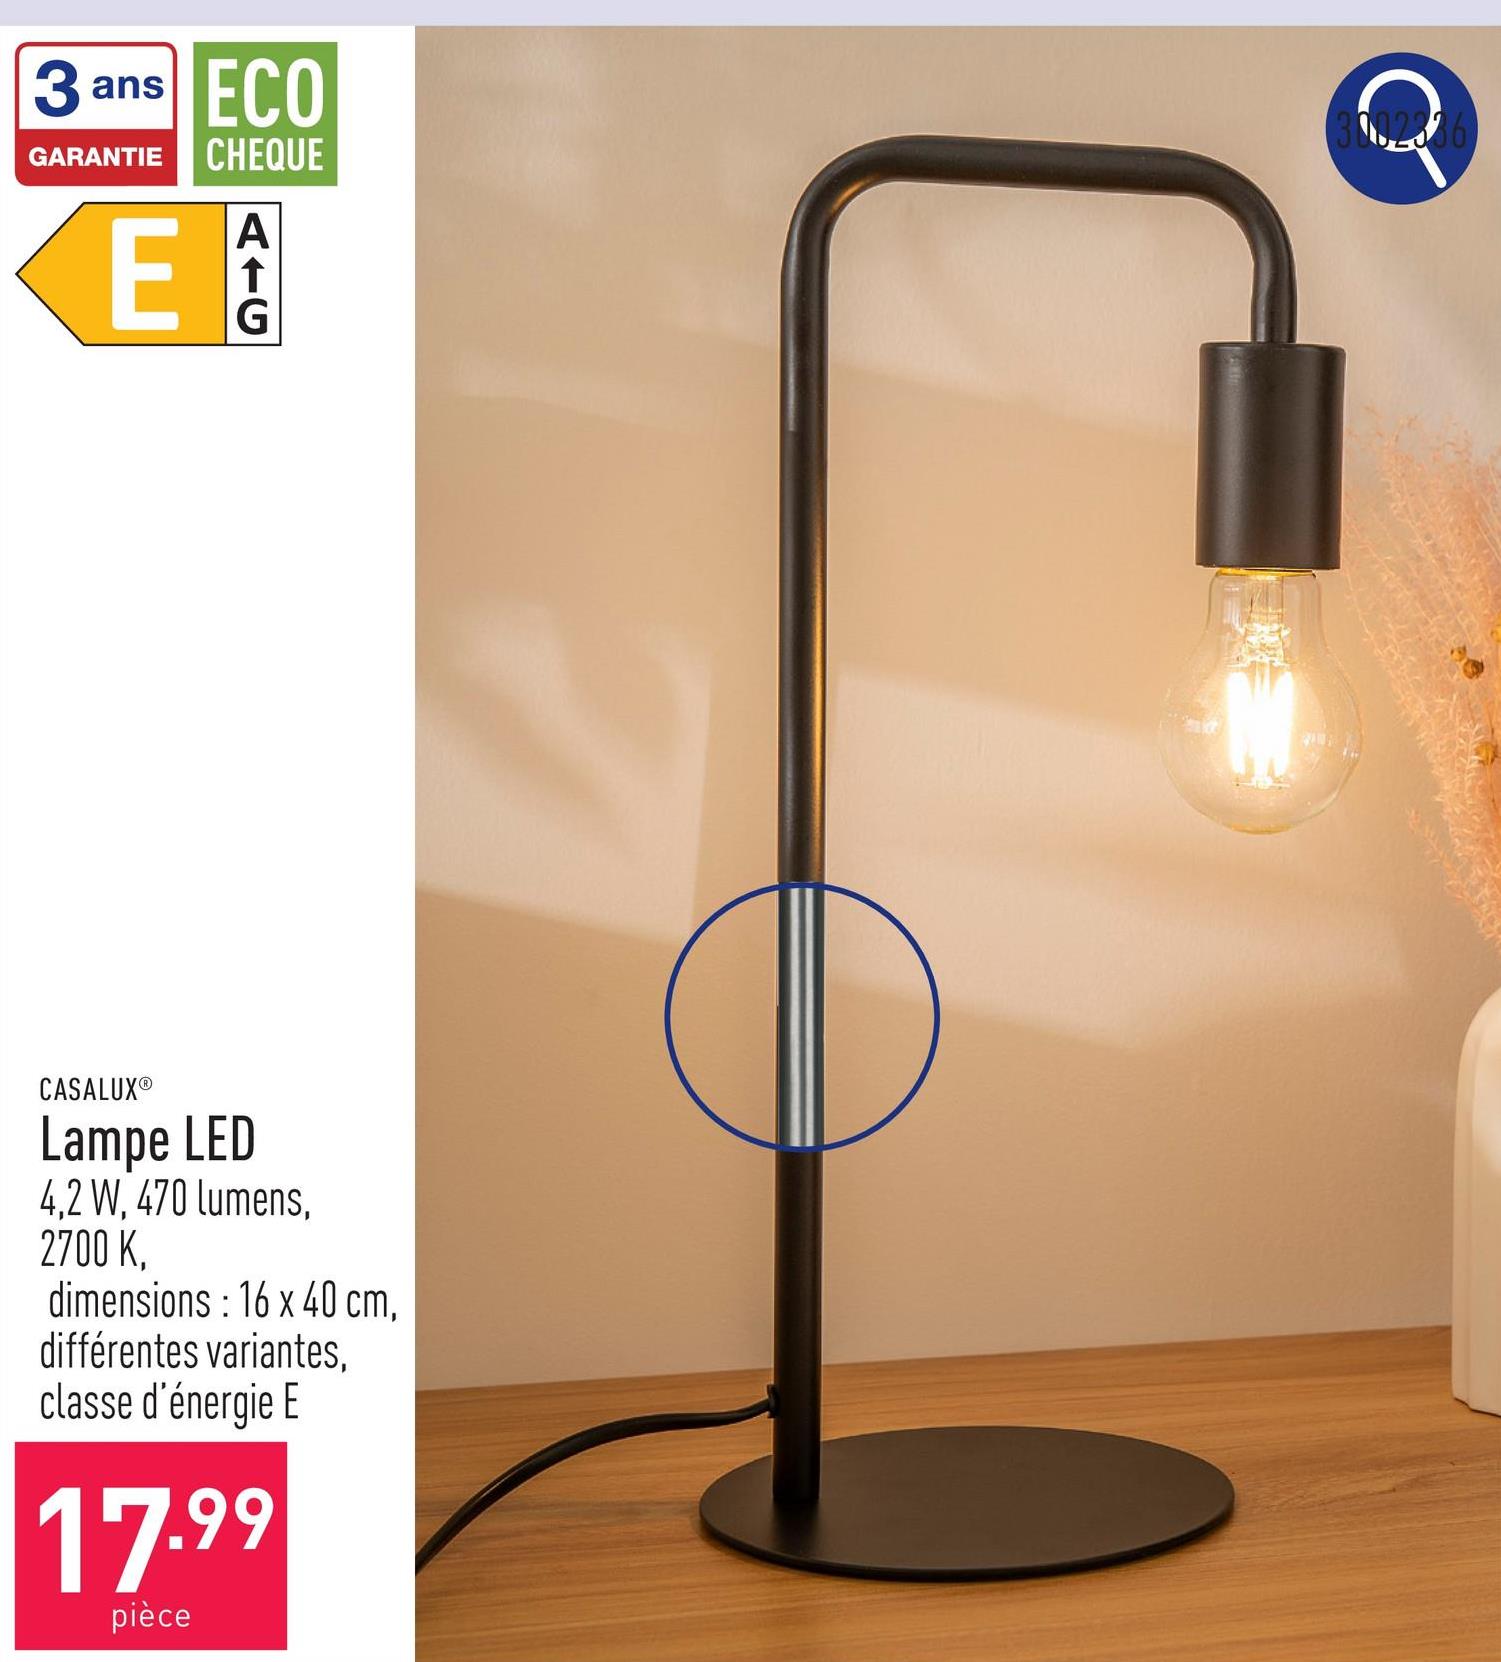 Lampe LED 4,2 W, 470 lumens, 2700 K, dimensions : 16 x 40 cm, choix entre différentes variantes, classe d'énergie E